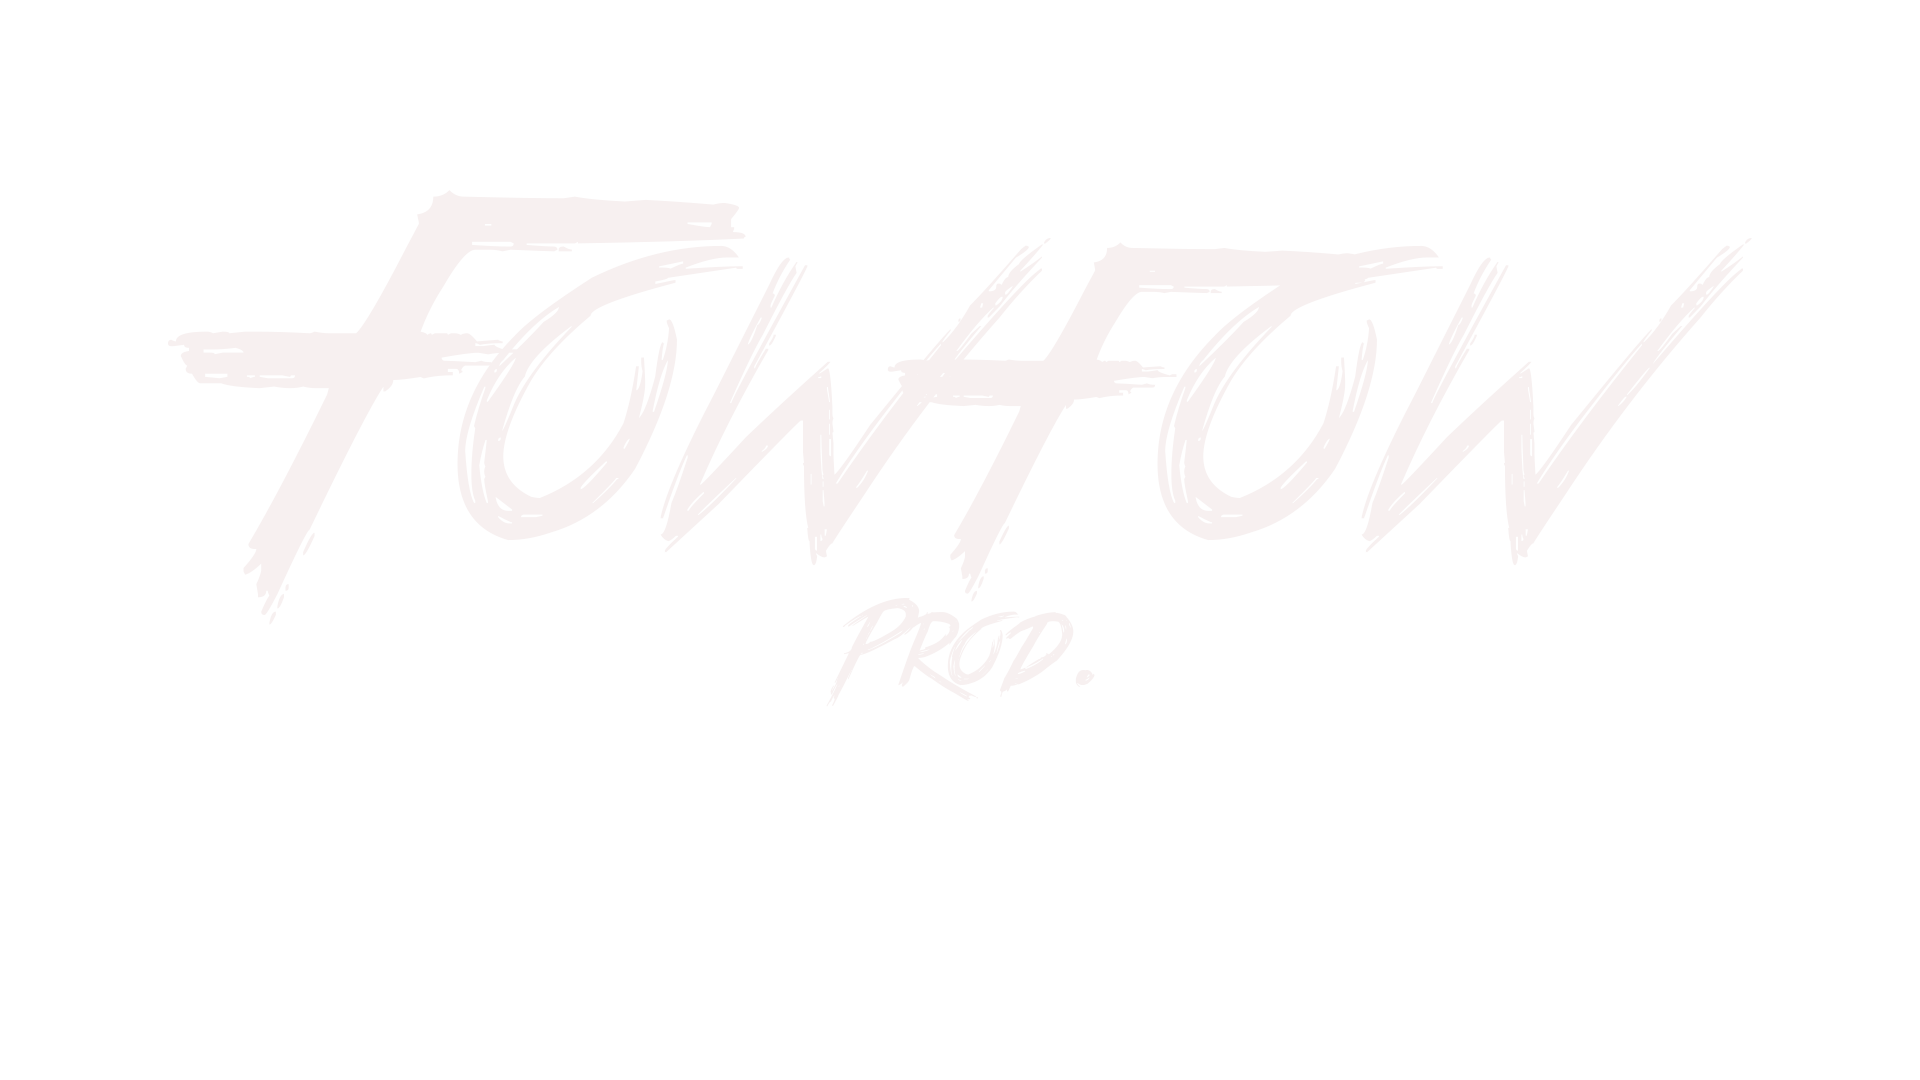 fowfow blanc 1920x1080 1